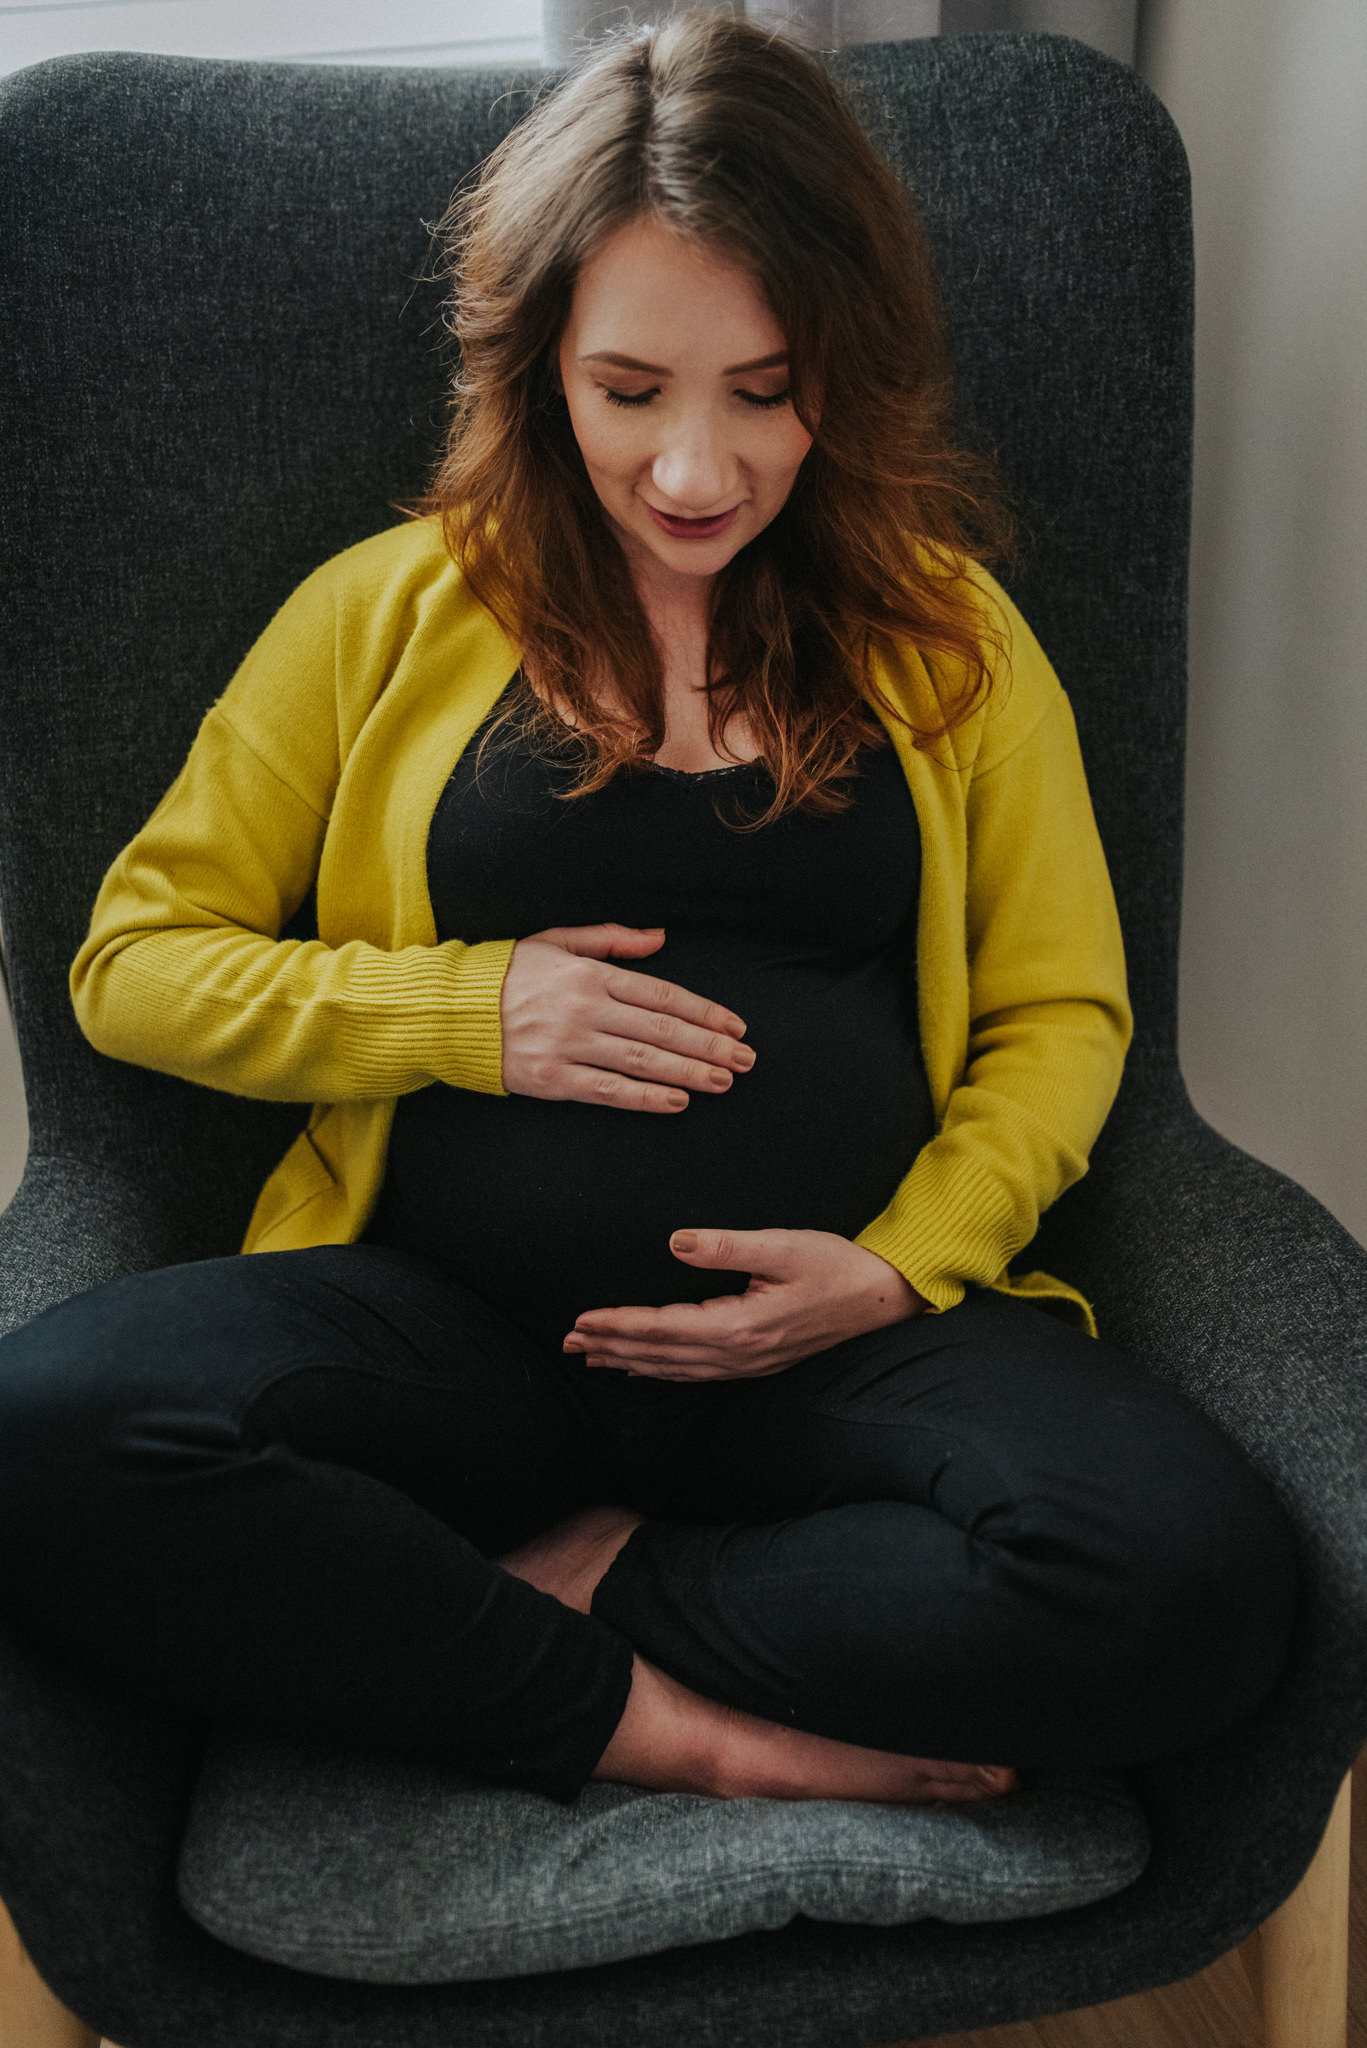 Dagmara + Michał | Sesja ciążowa w domu